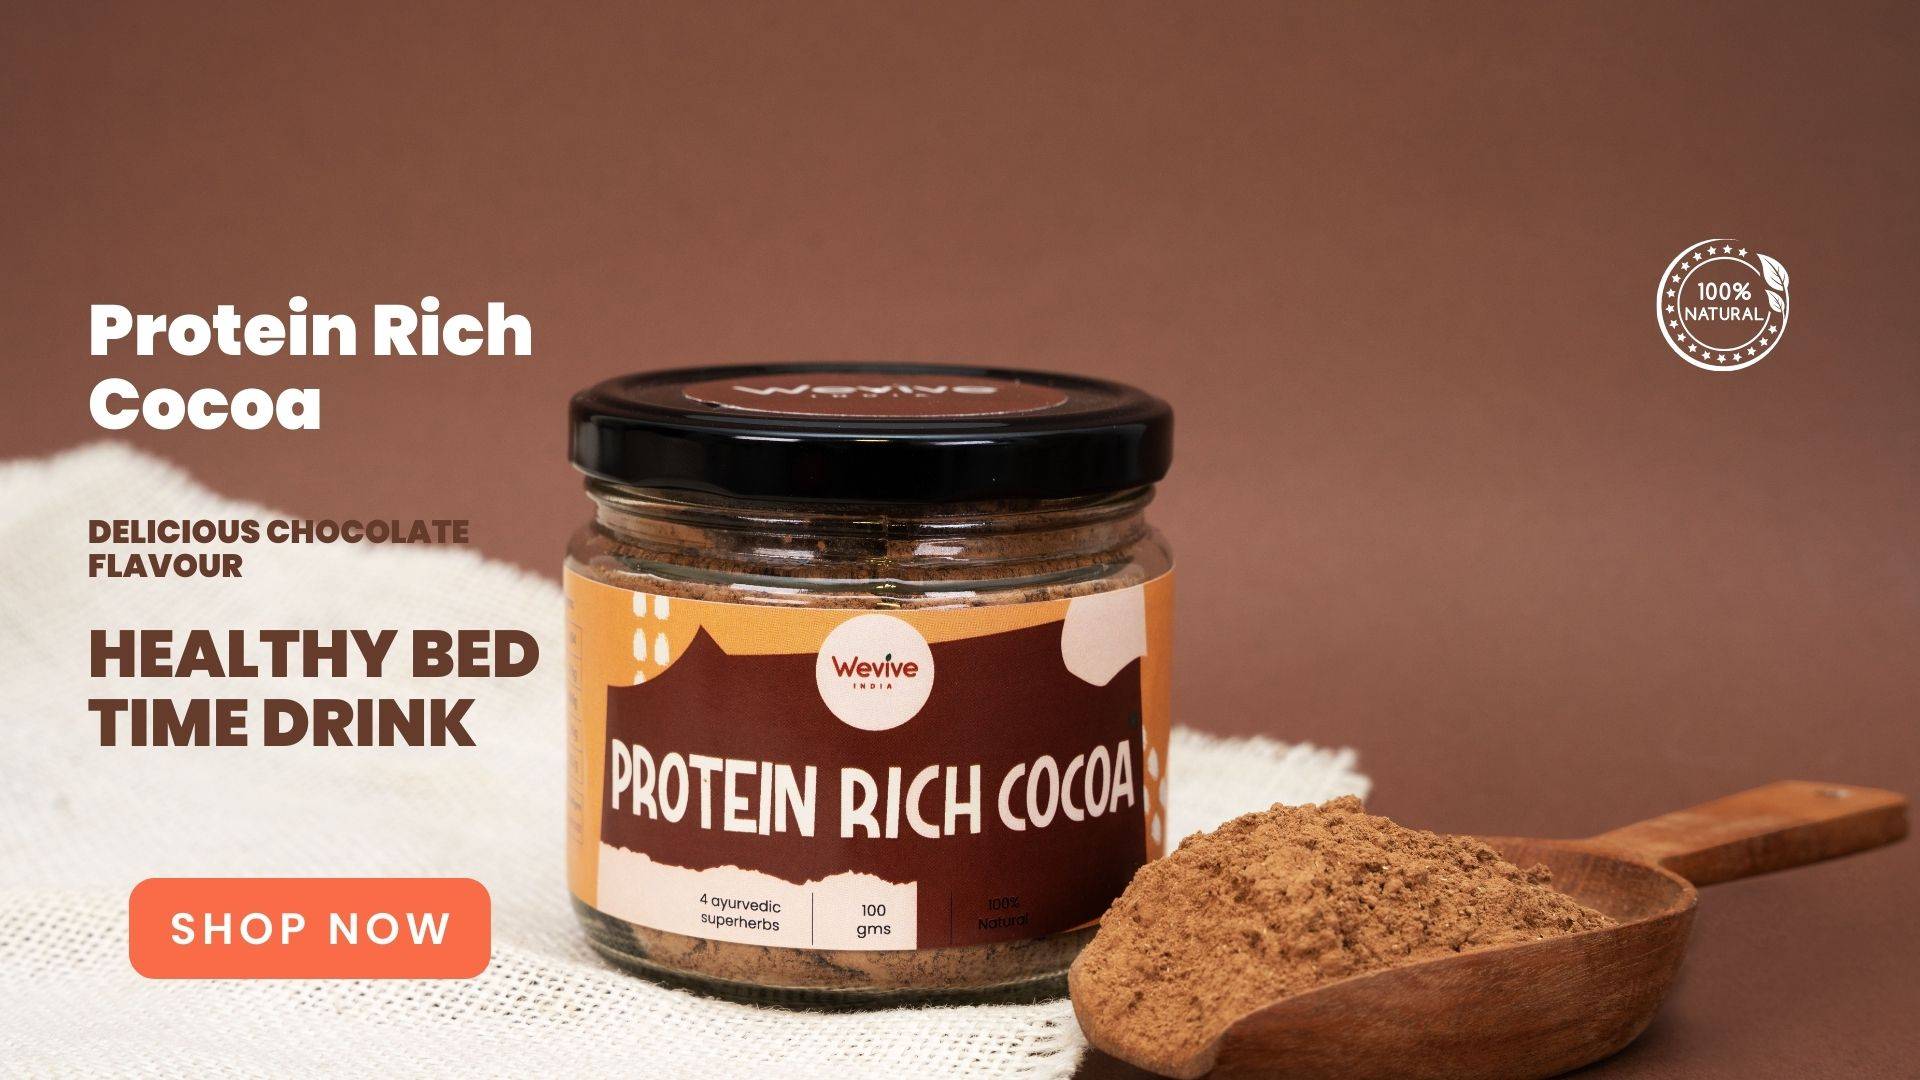 Protein Rich Cocoa